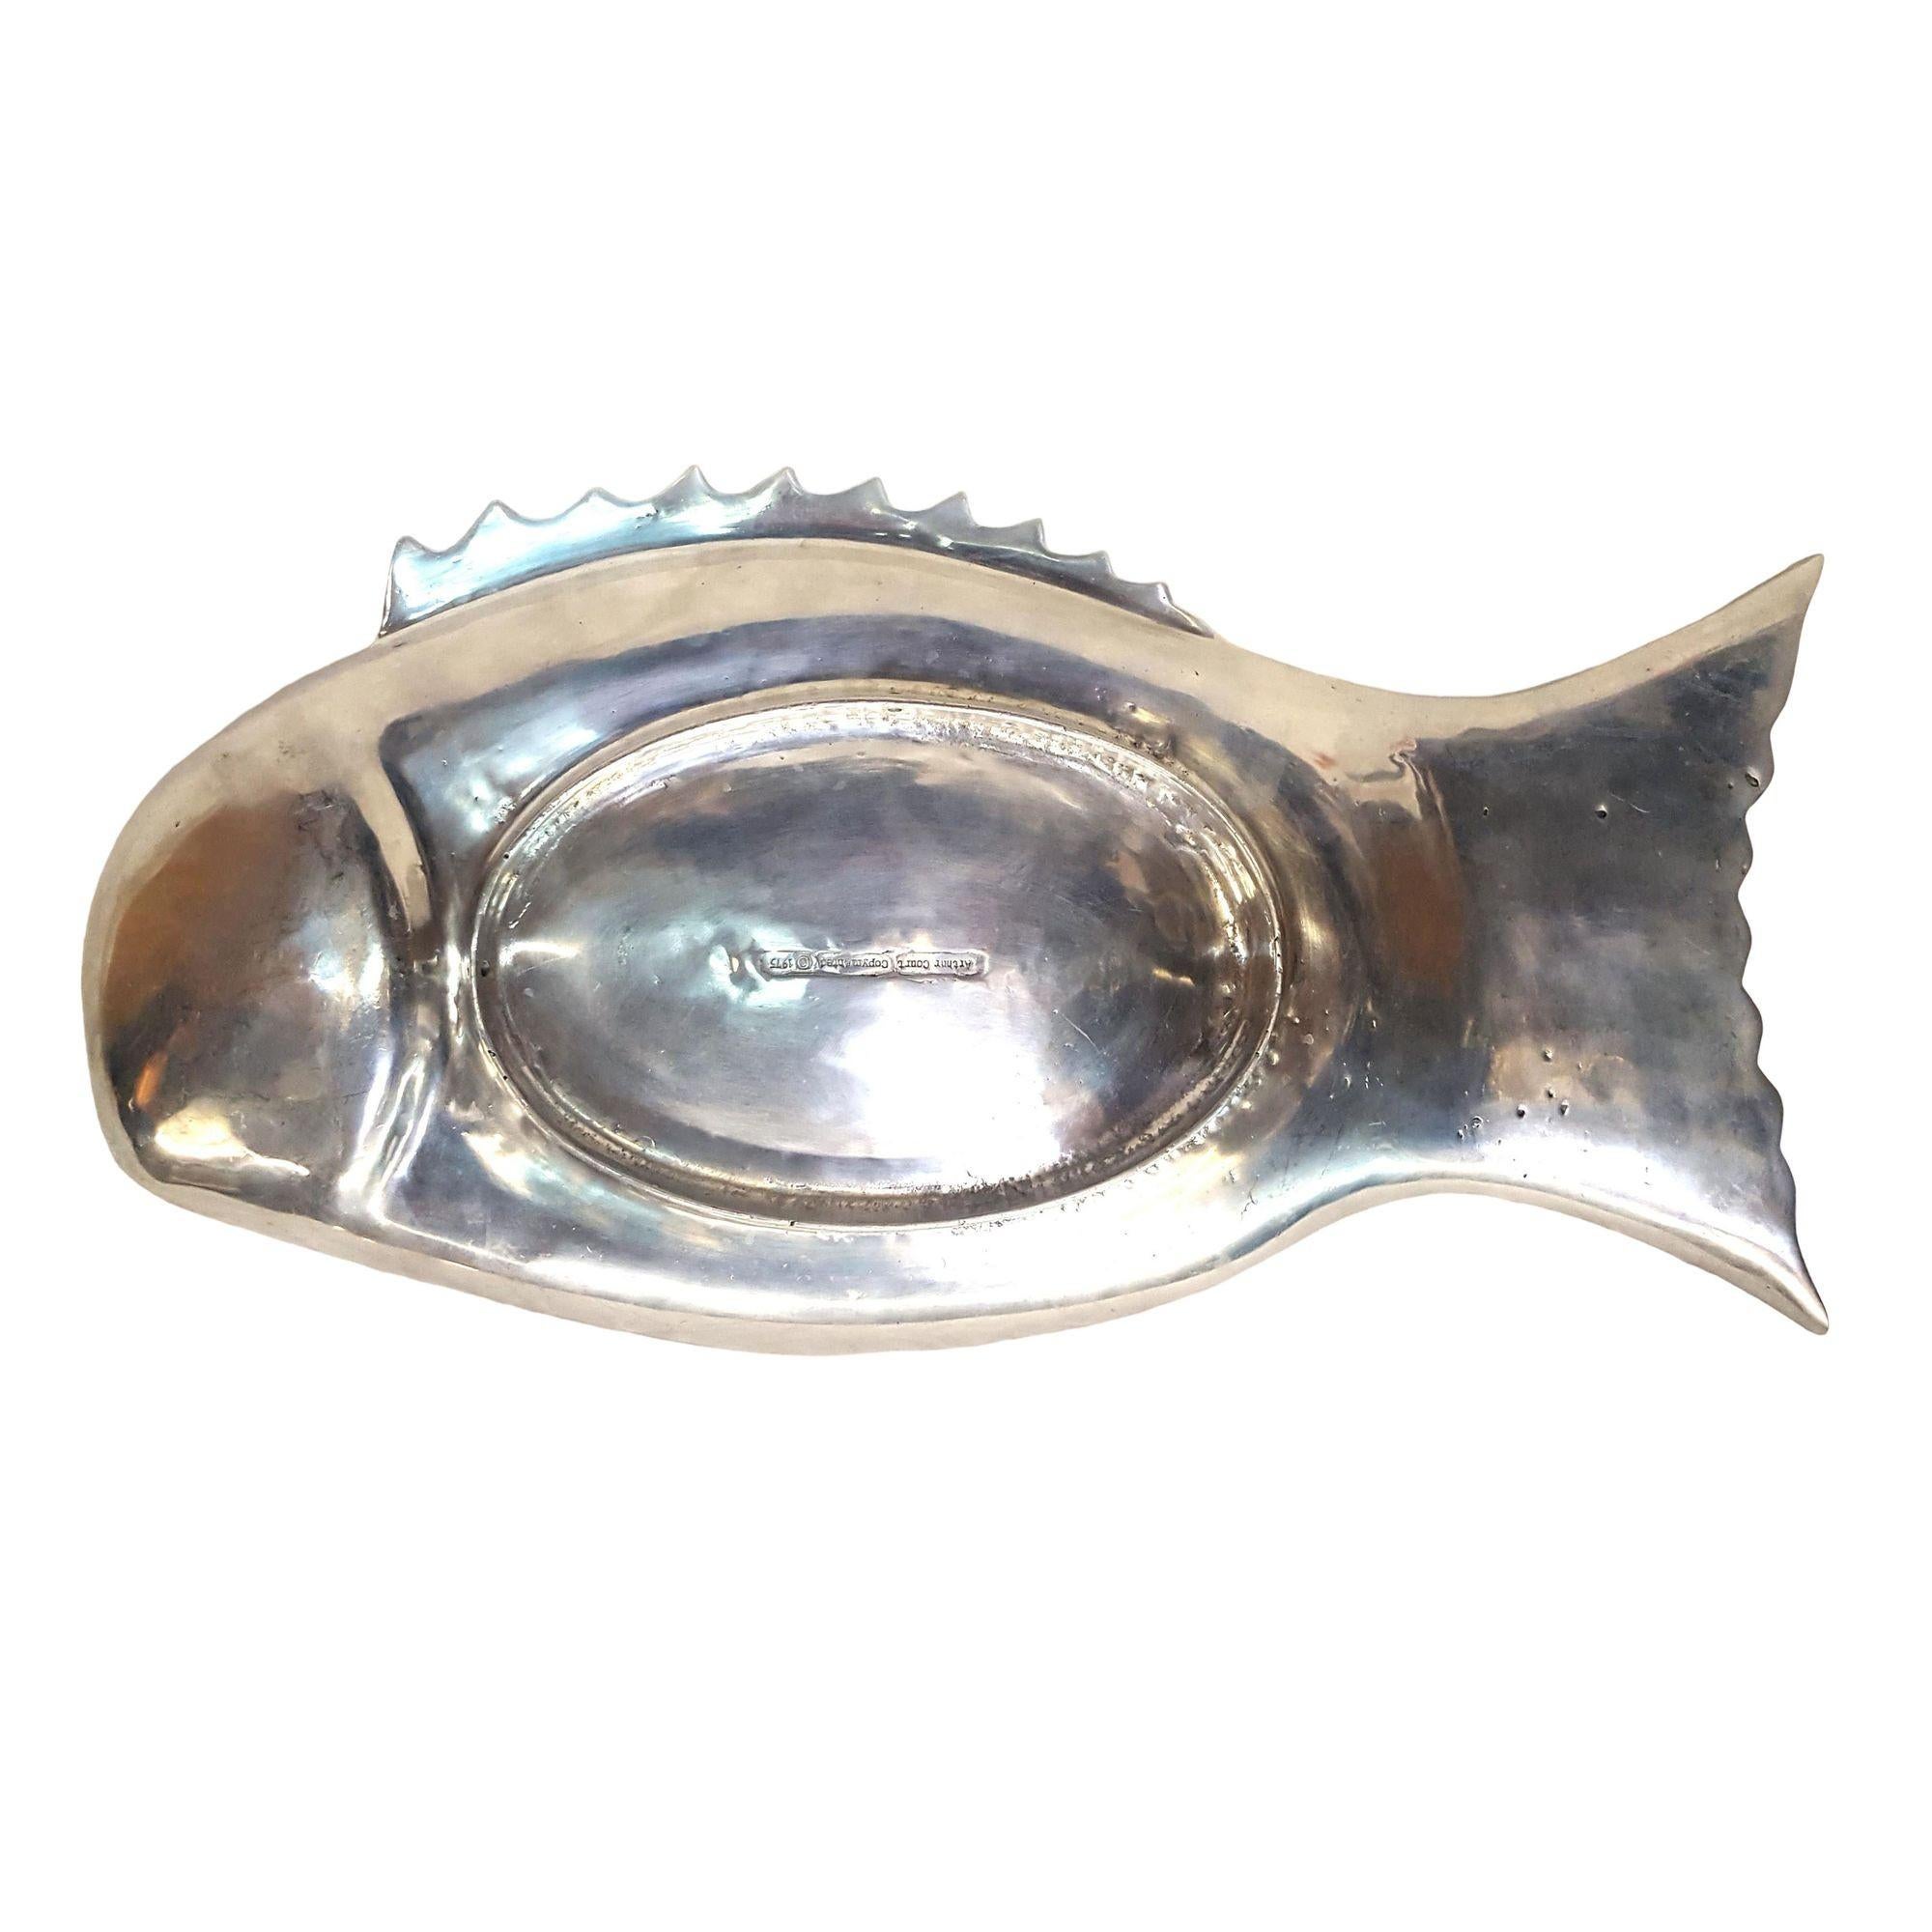 Vintage Arthur Court Aluminium Fish Serving Platter

Année de fabrication : 1975
Dimensions : 24 pouces de long X 13 pouces de large X 2-1/2 pouces de haut

Info : Magnifique plat de service en aluminium pour le poisson, conçu par Arthur Court en